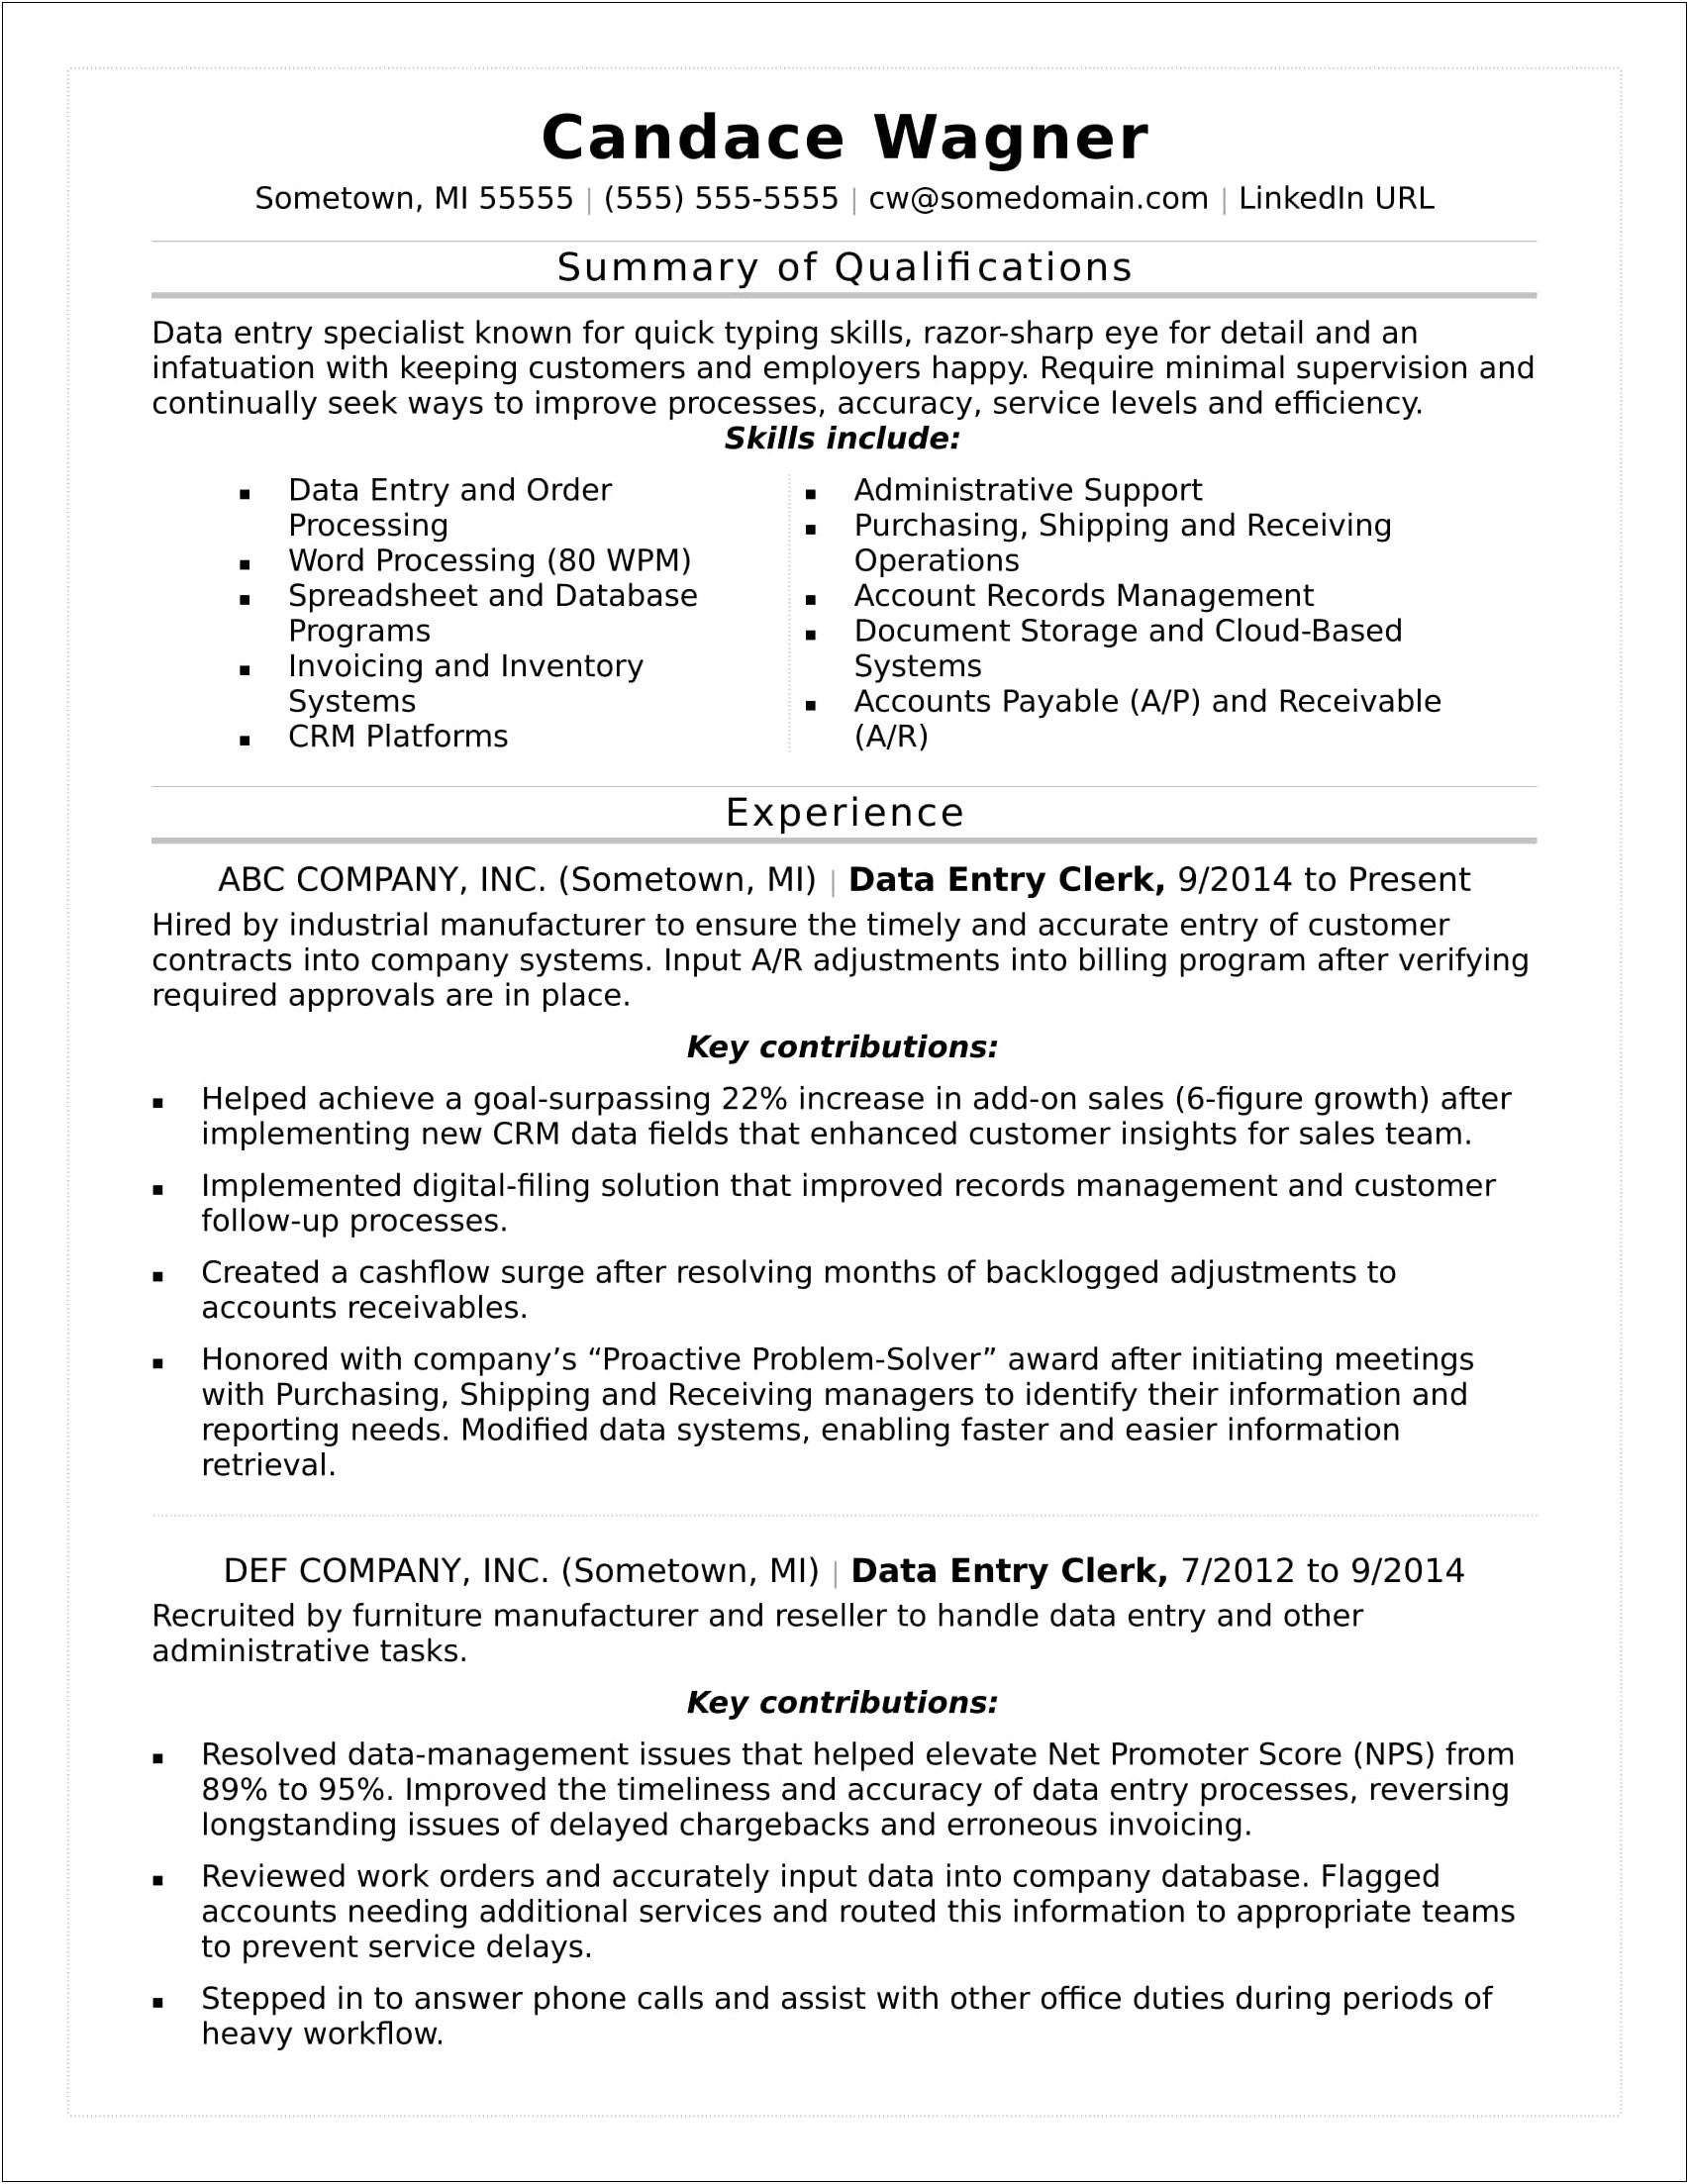 Community Data Entry Jobs Description For Resume